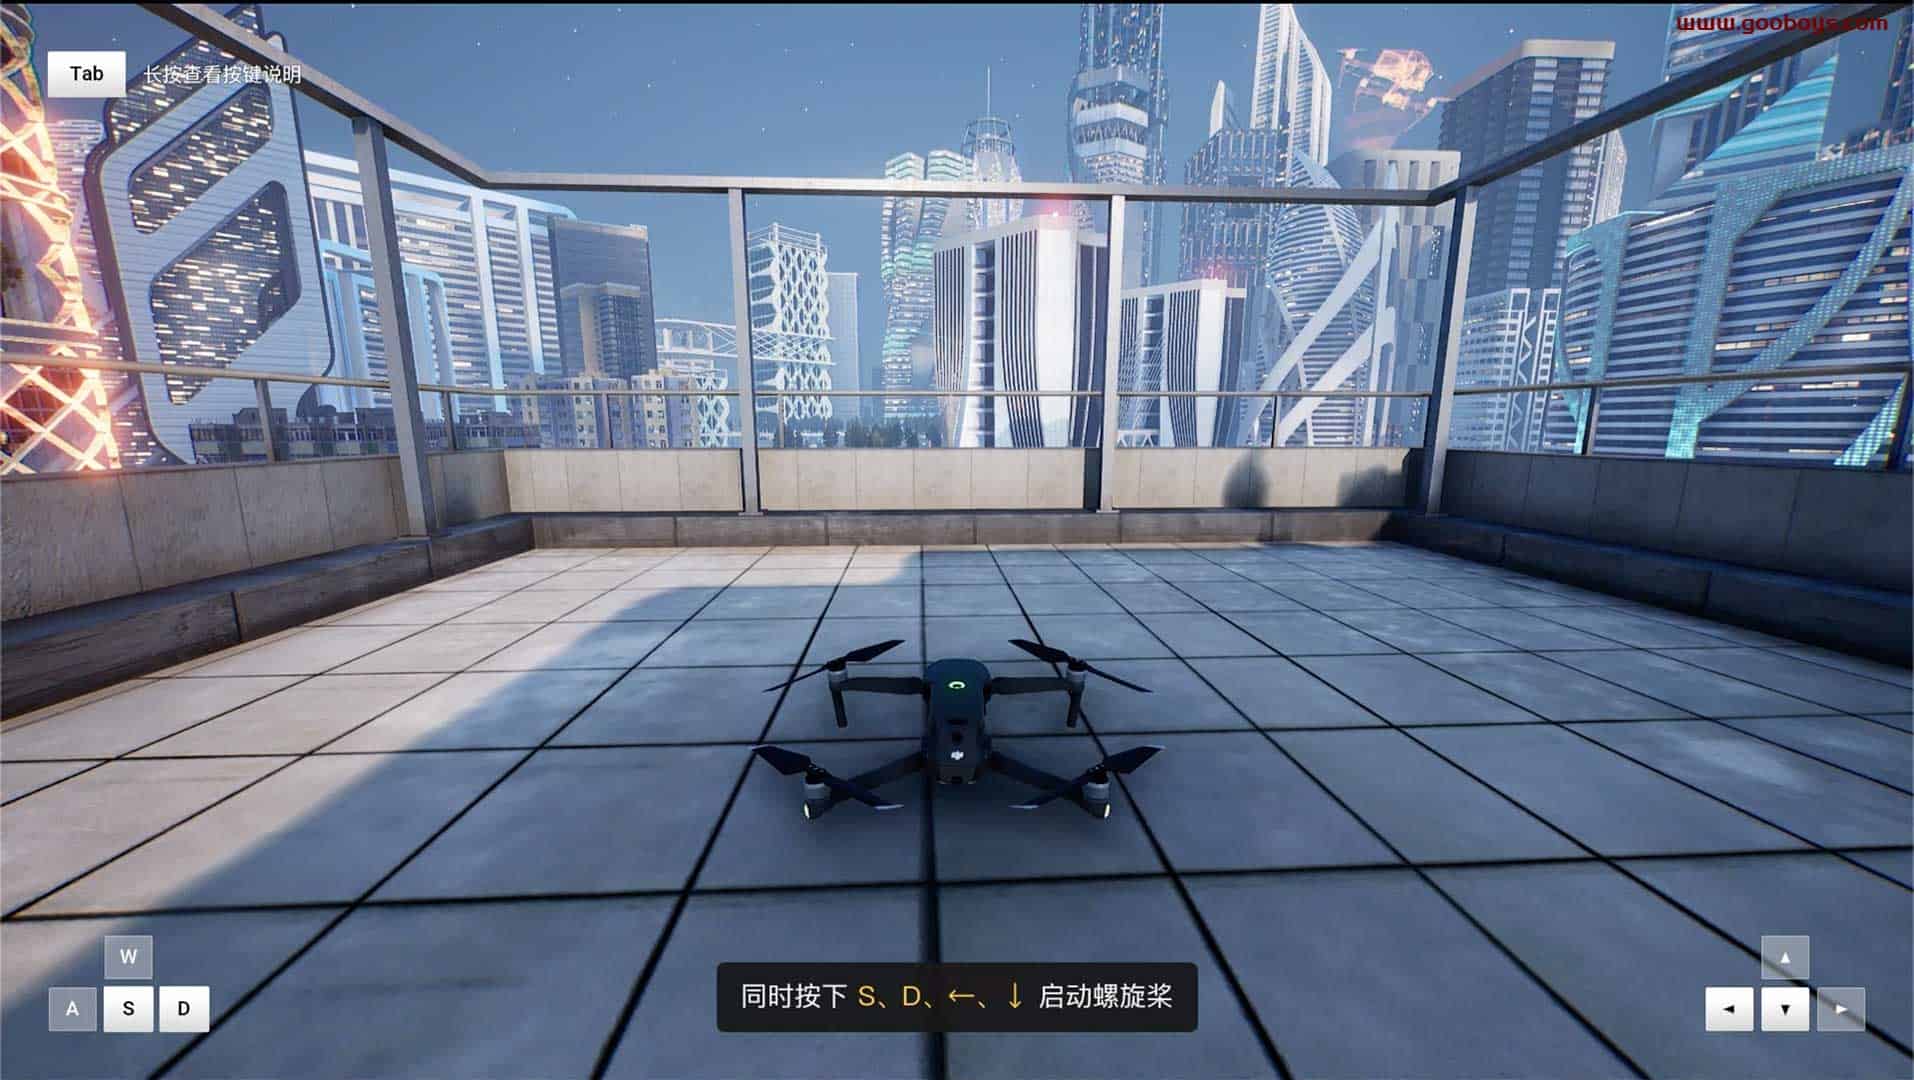 大疆模拟飞行器 在线第一视觉体验无人机飞行插图